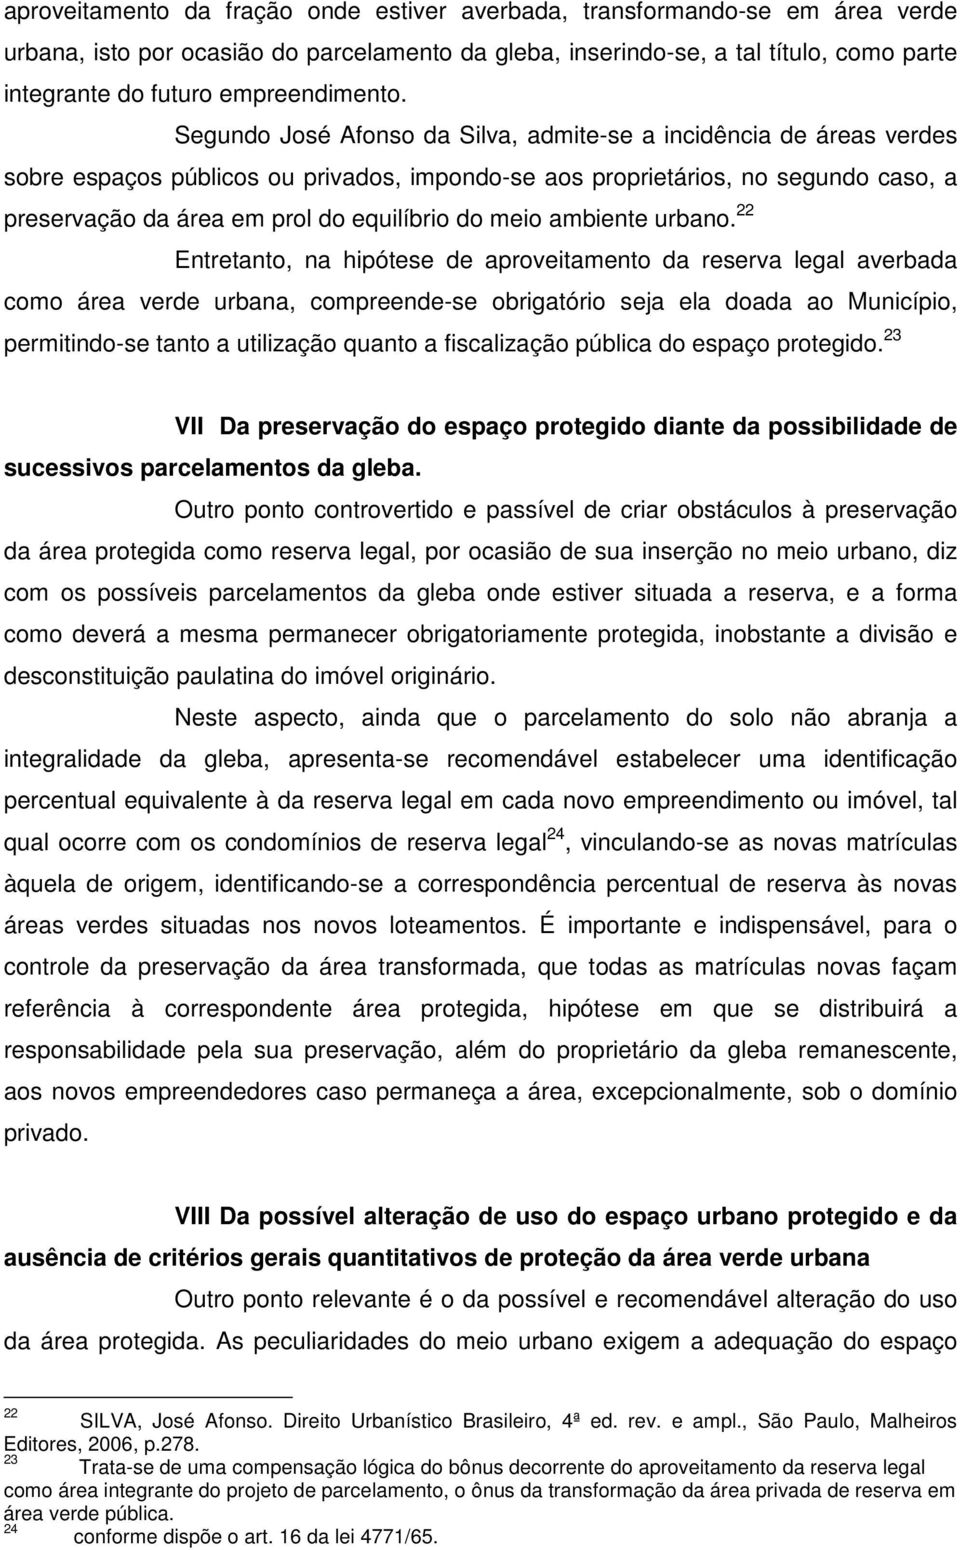 Segundo José Afonso da Silva, admite-se a incidência de áreas verdes sobre espaços públicos ou privados, impondo-se aos proprietários, no segundo caso, a preservação da área em prol do equilíbrio do